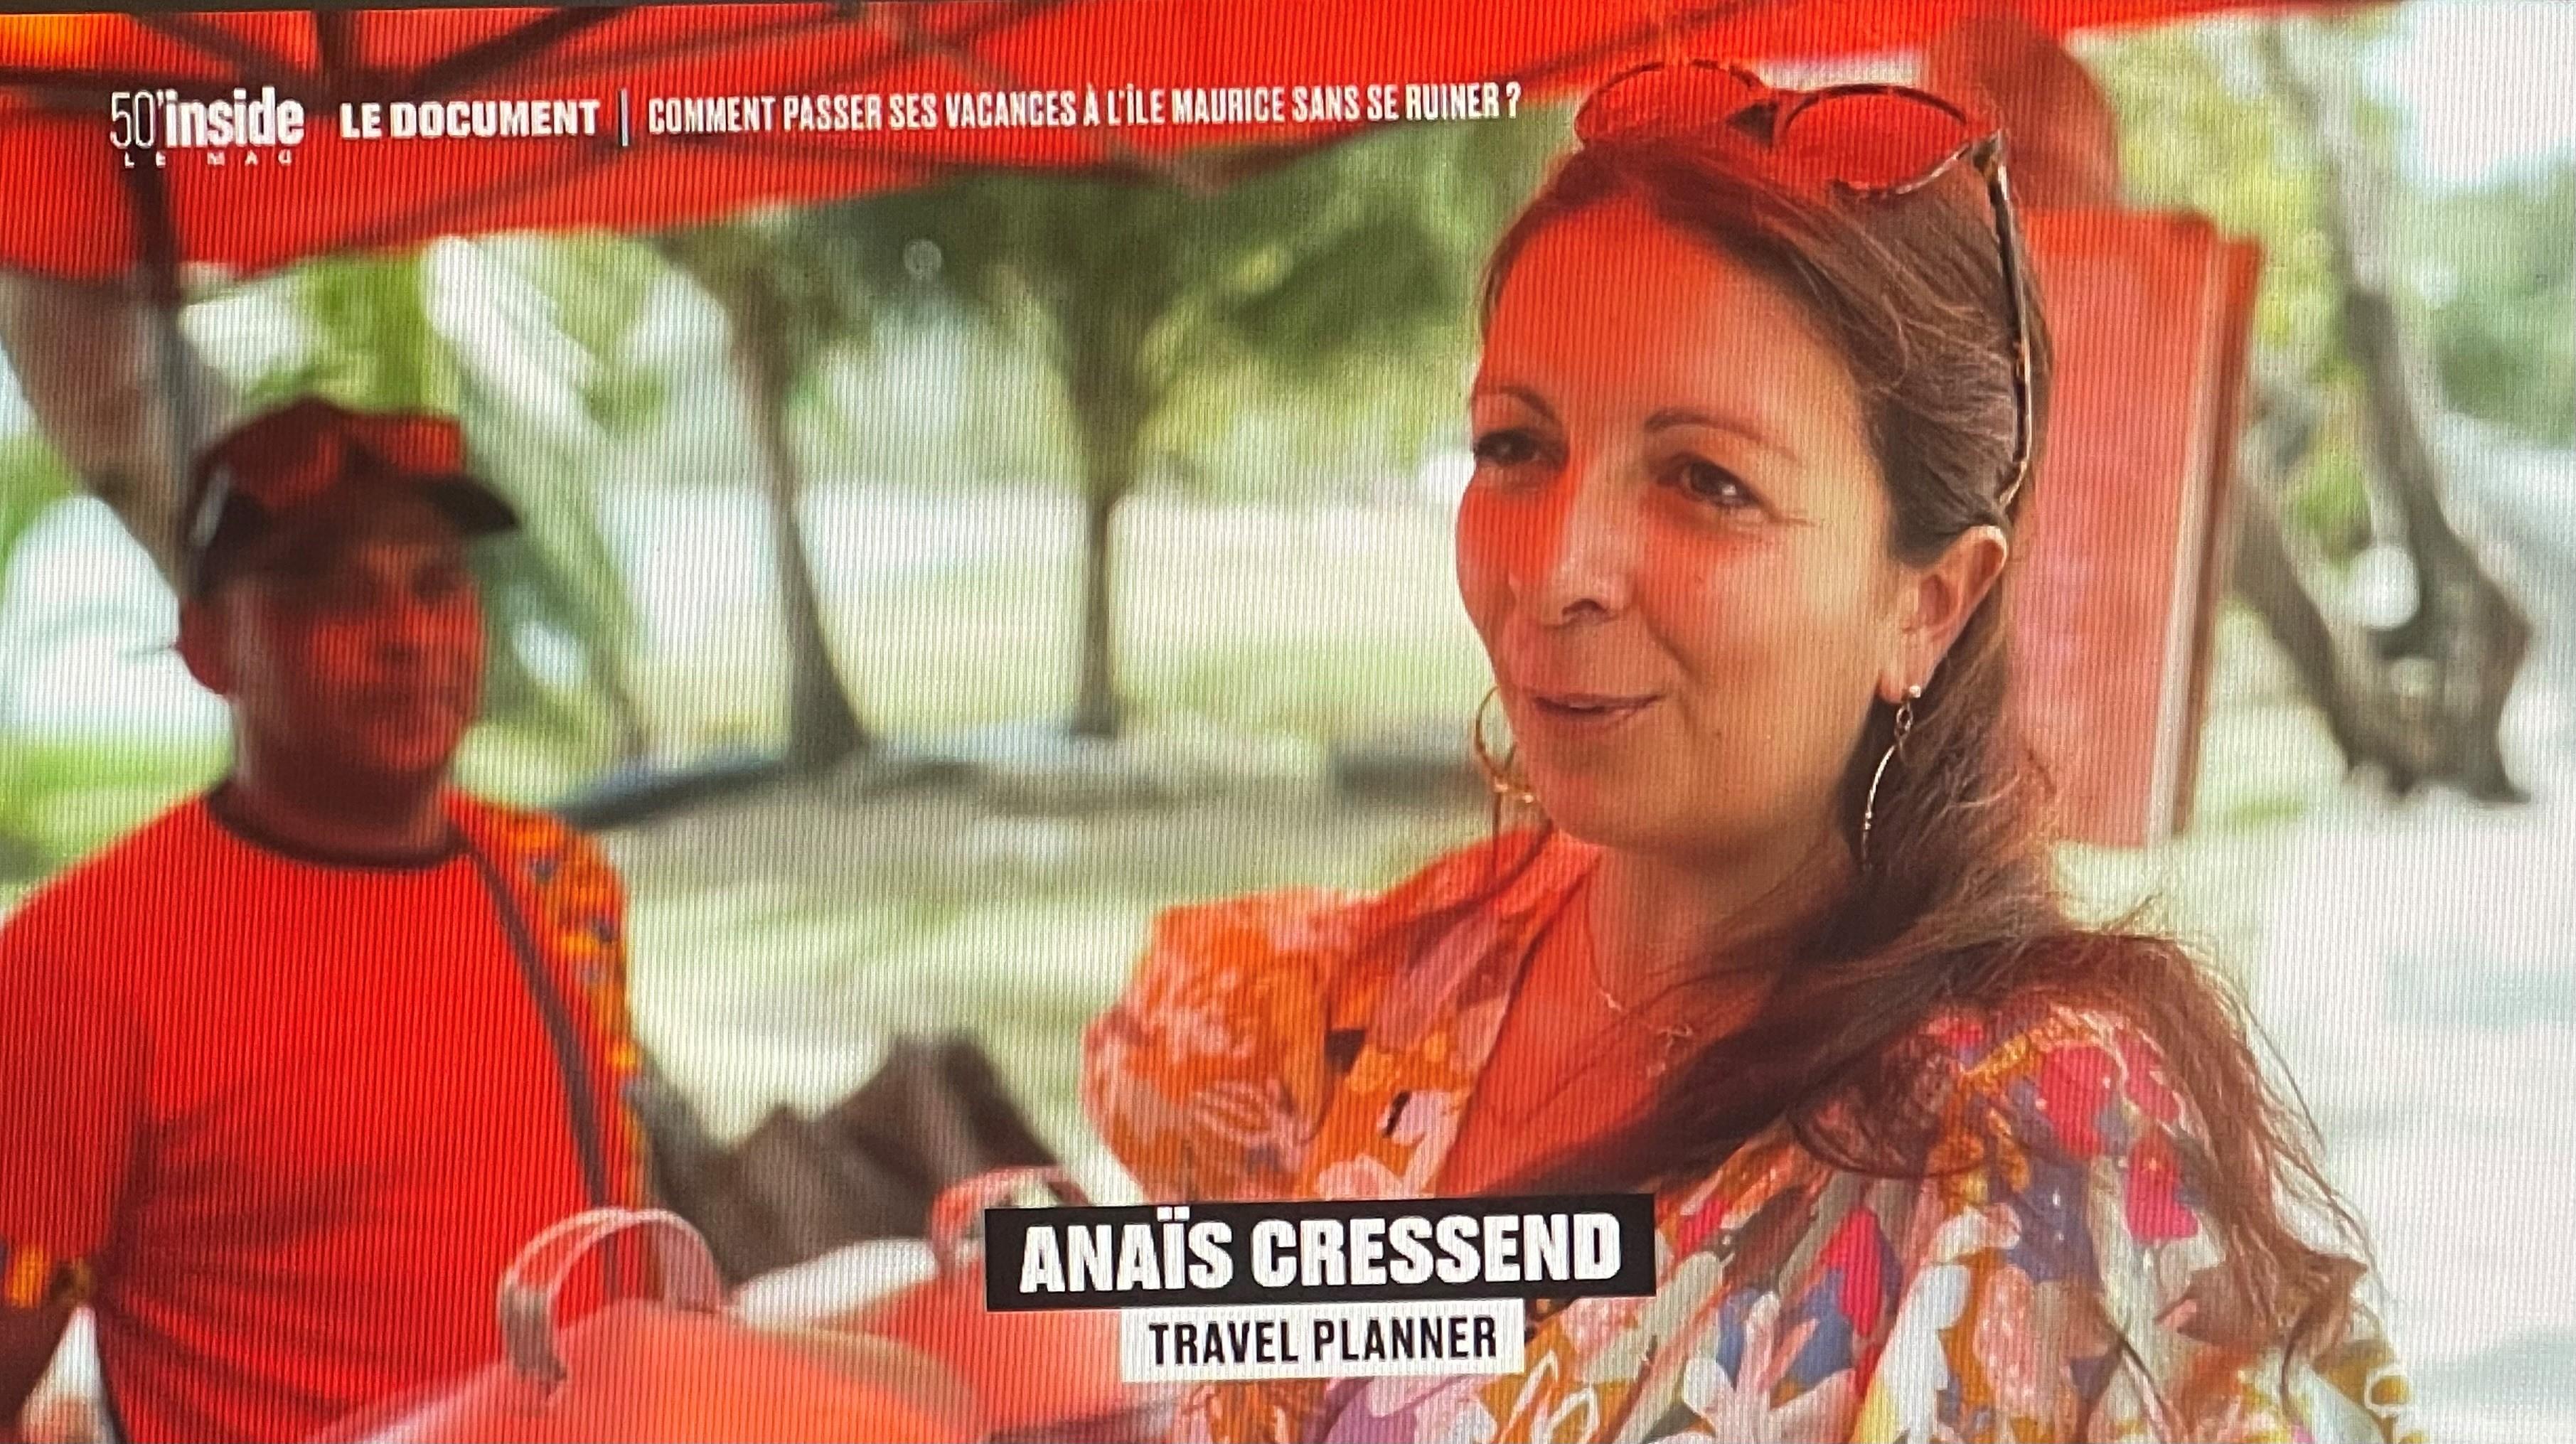 Image principale de la page Anaïs Cressend, Travel Planner Vialala dans 50' Inside sur TF1